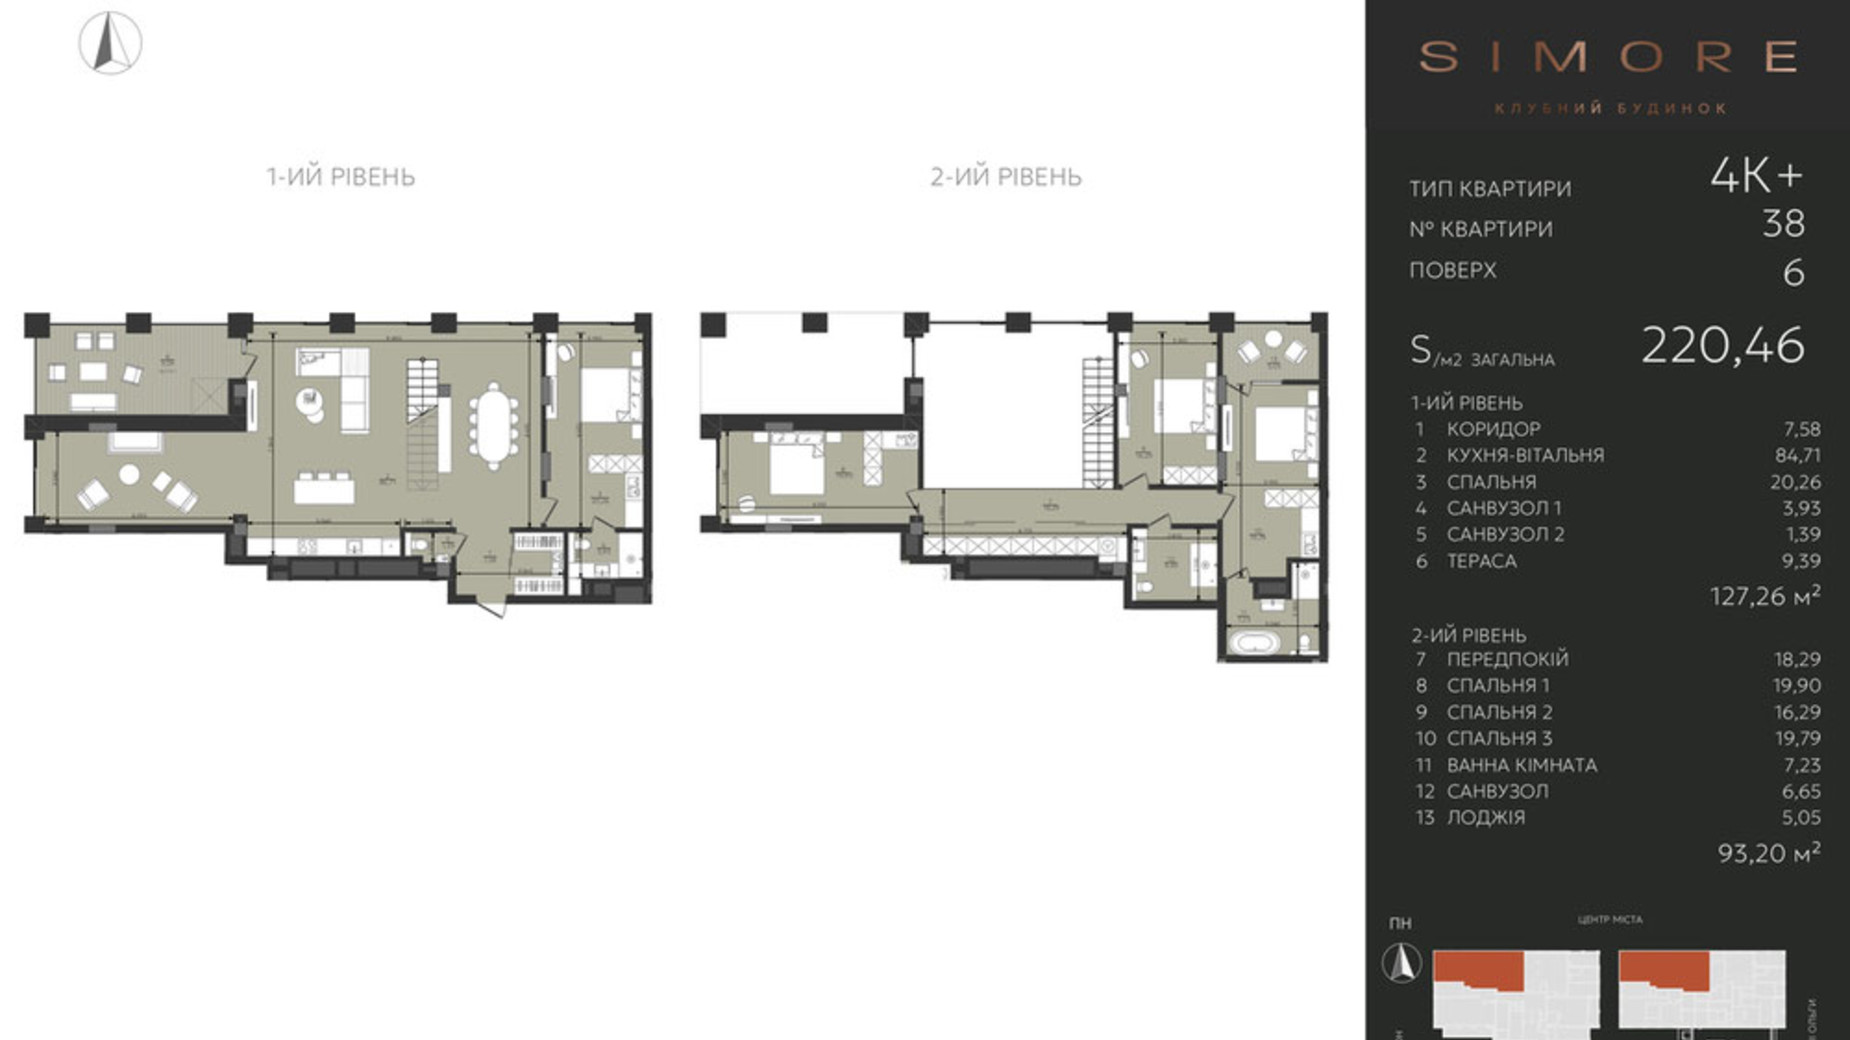 Планировка много­уровневой квартиры в Клубный дом Simore 220.46 м², фото 694213